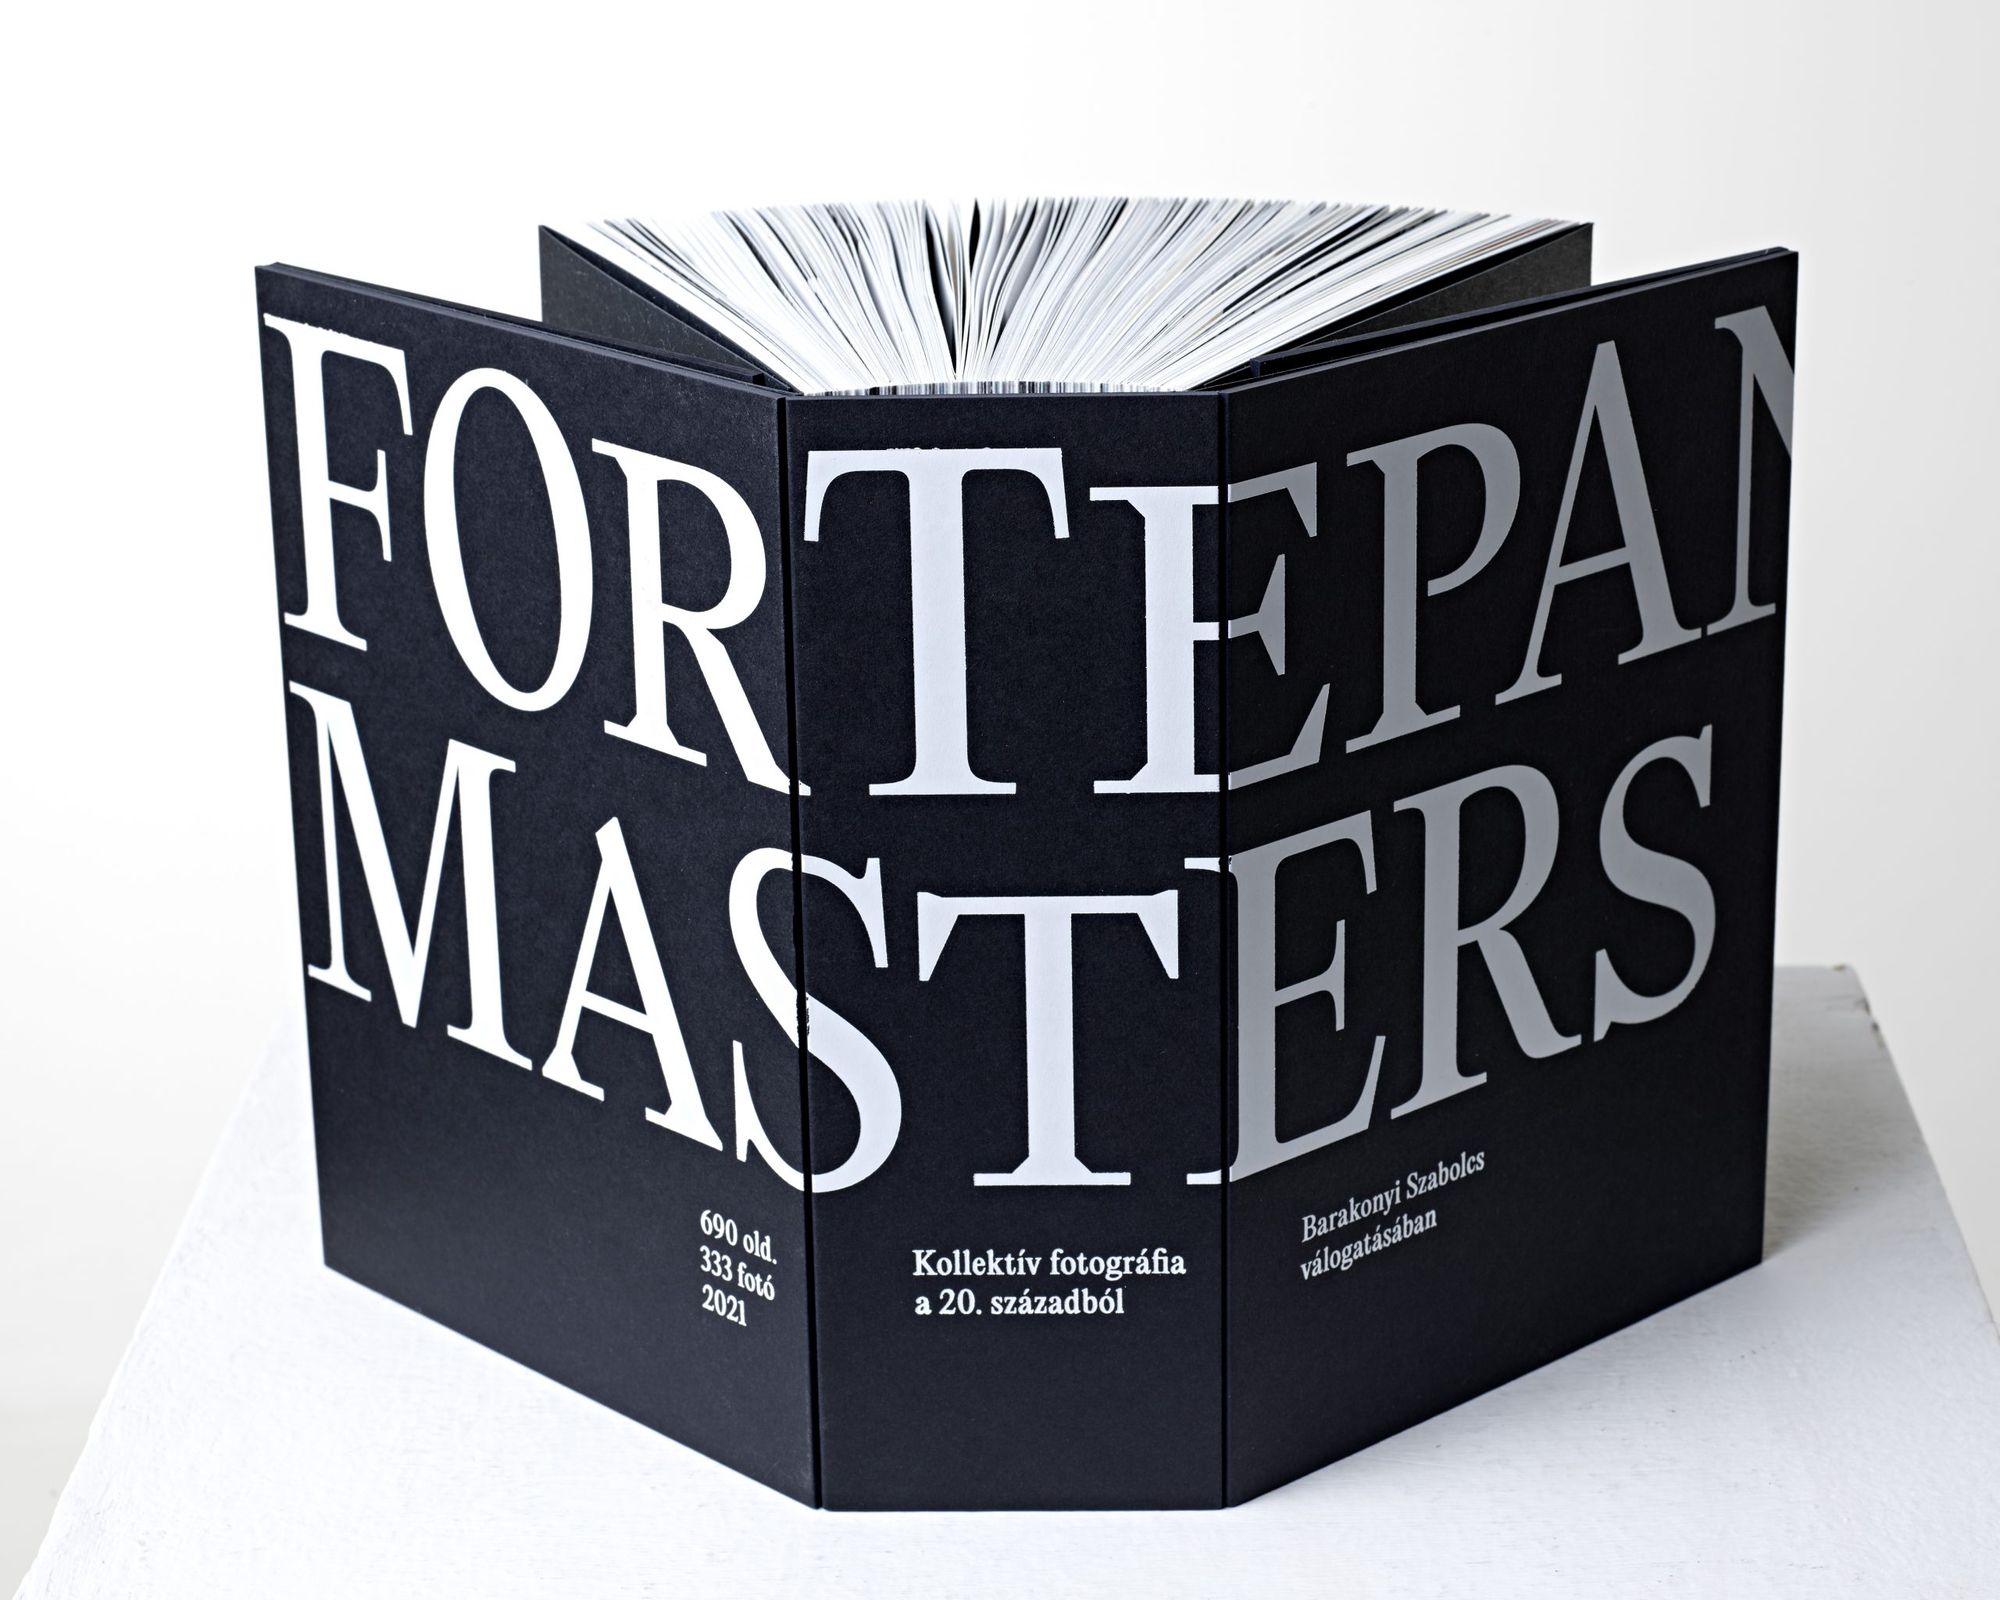 A 20. század kollektív emlékezetének lenyomatát őrzi a Fortepan Masters fotókönyv